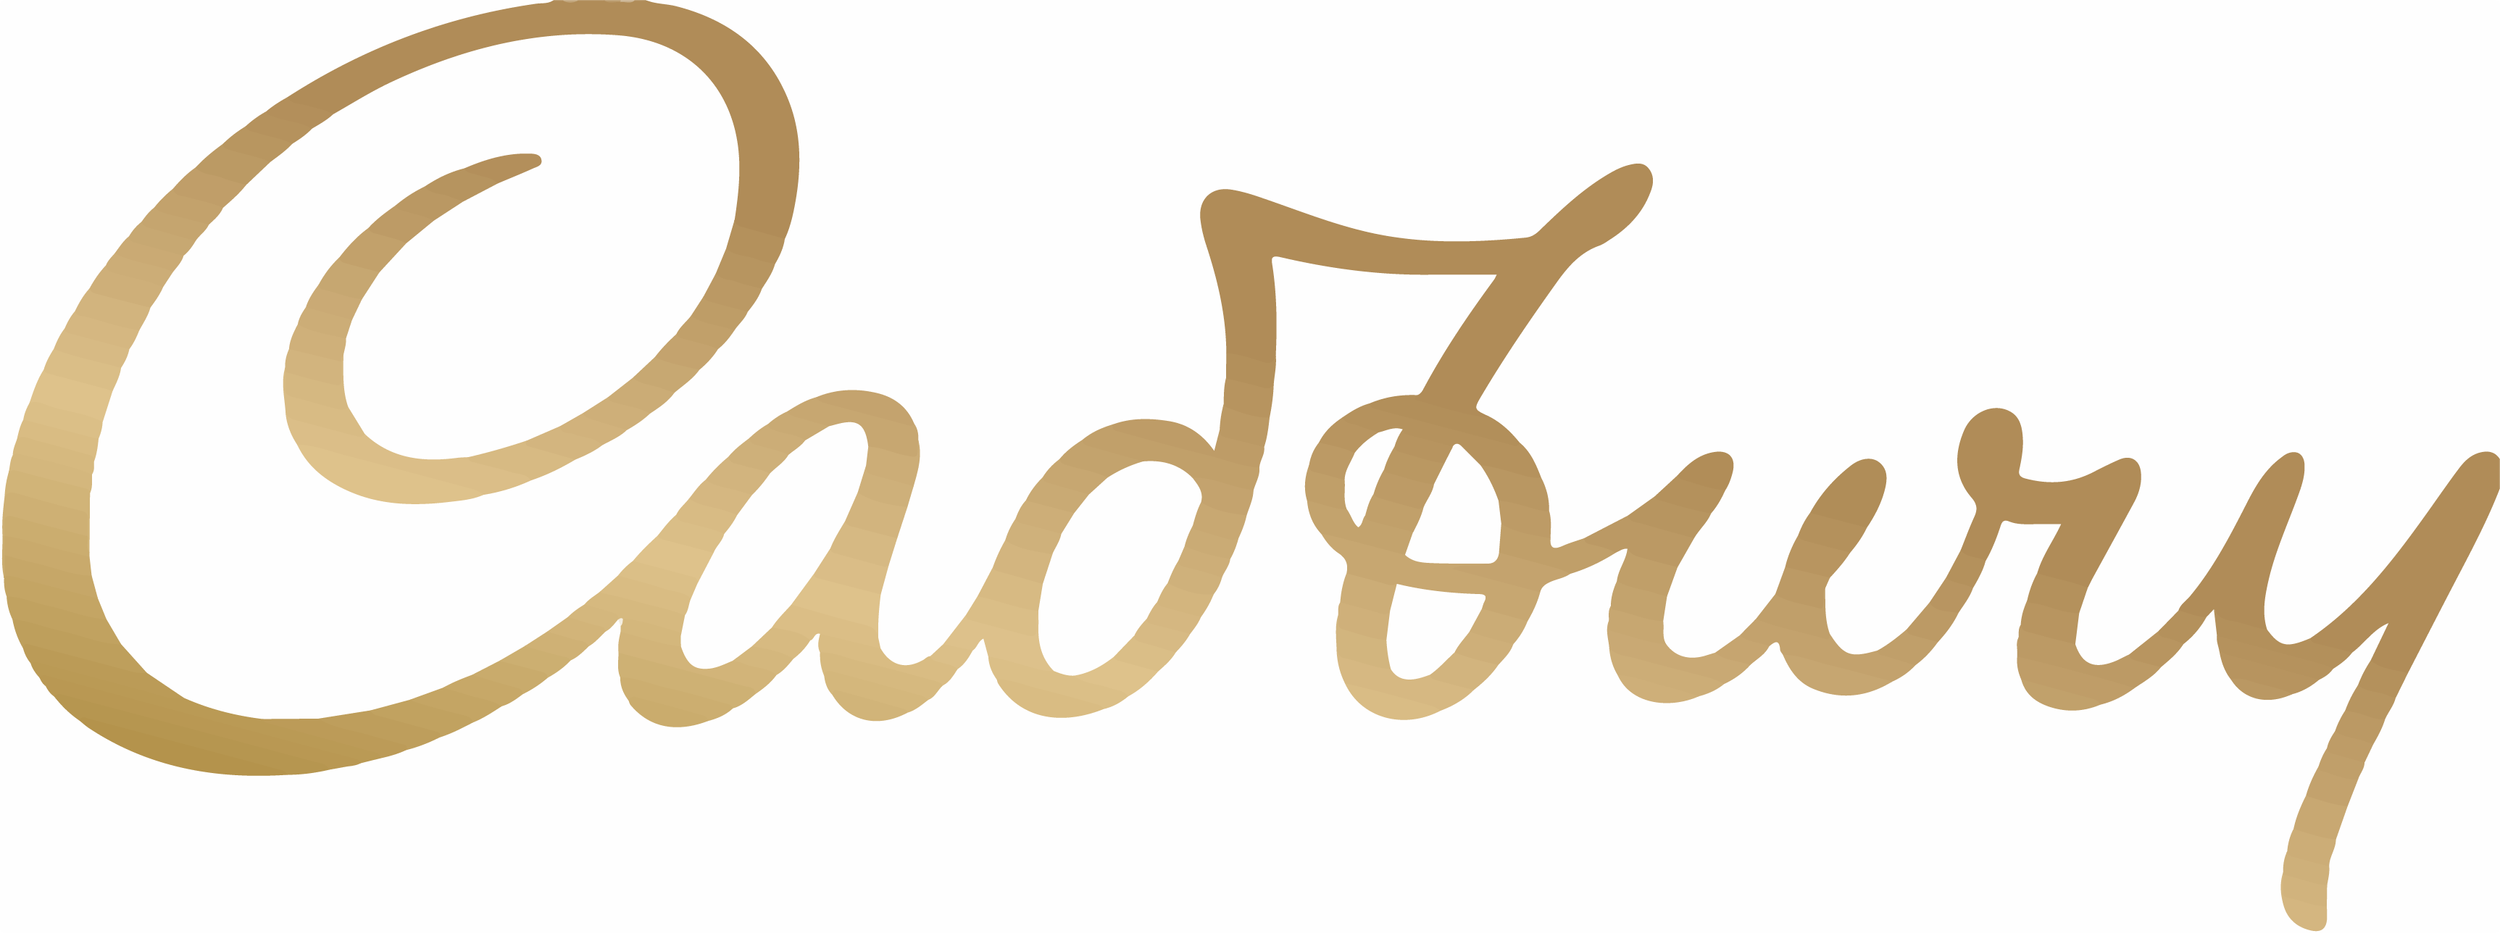 Cadbury_Logo_Gold.png